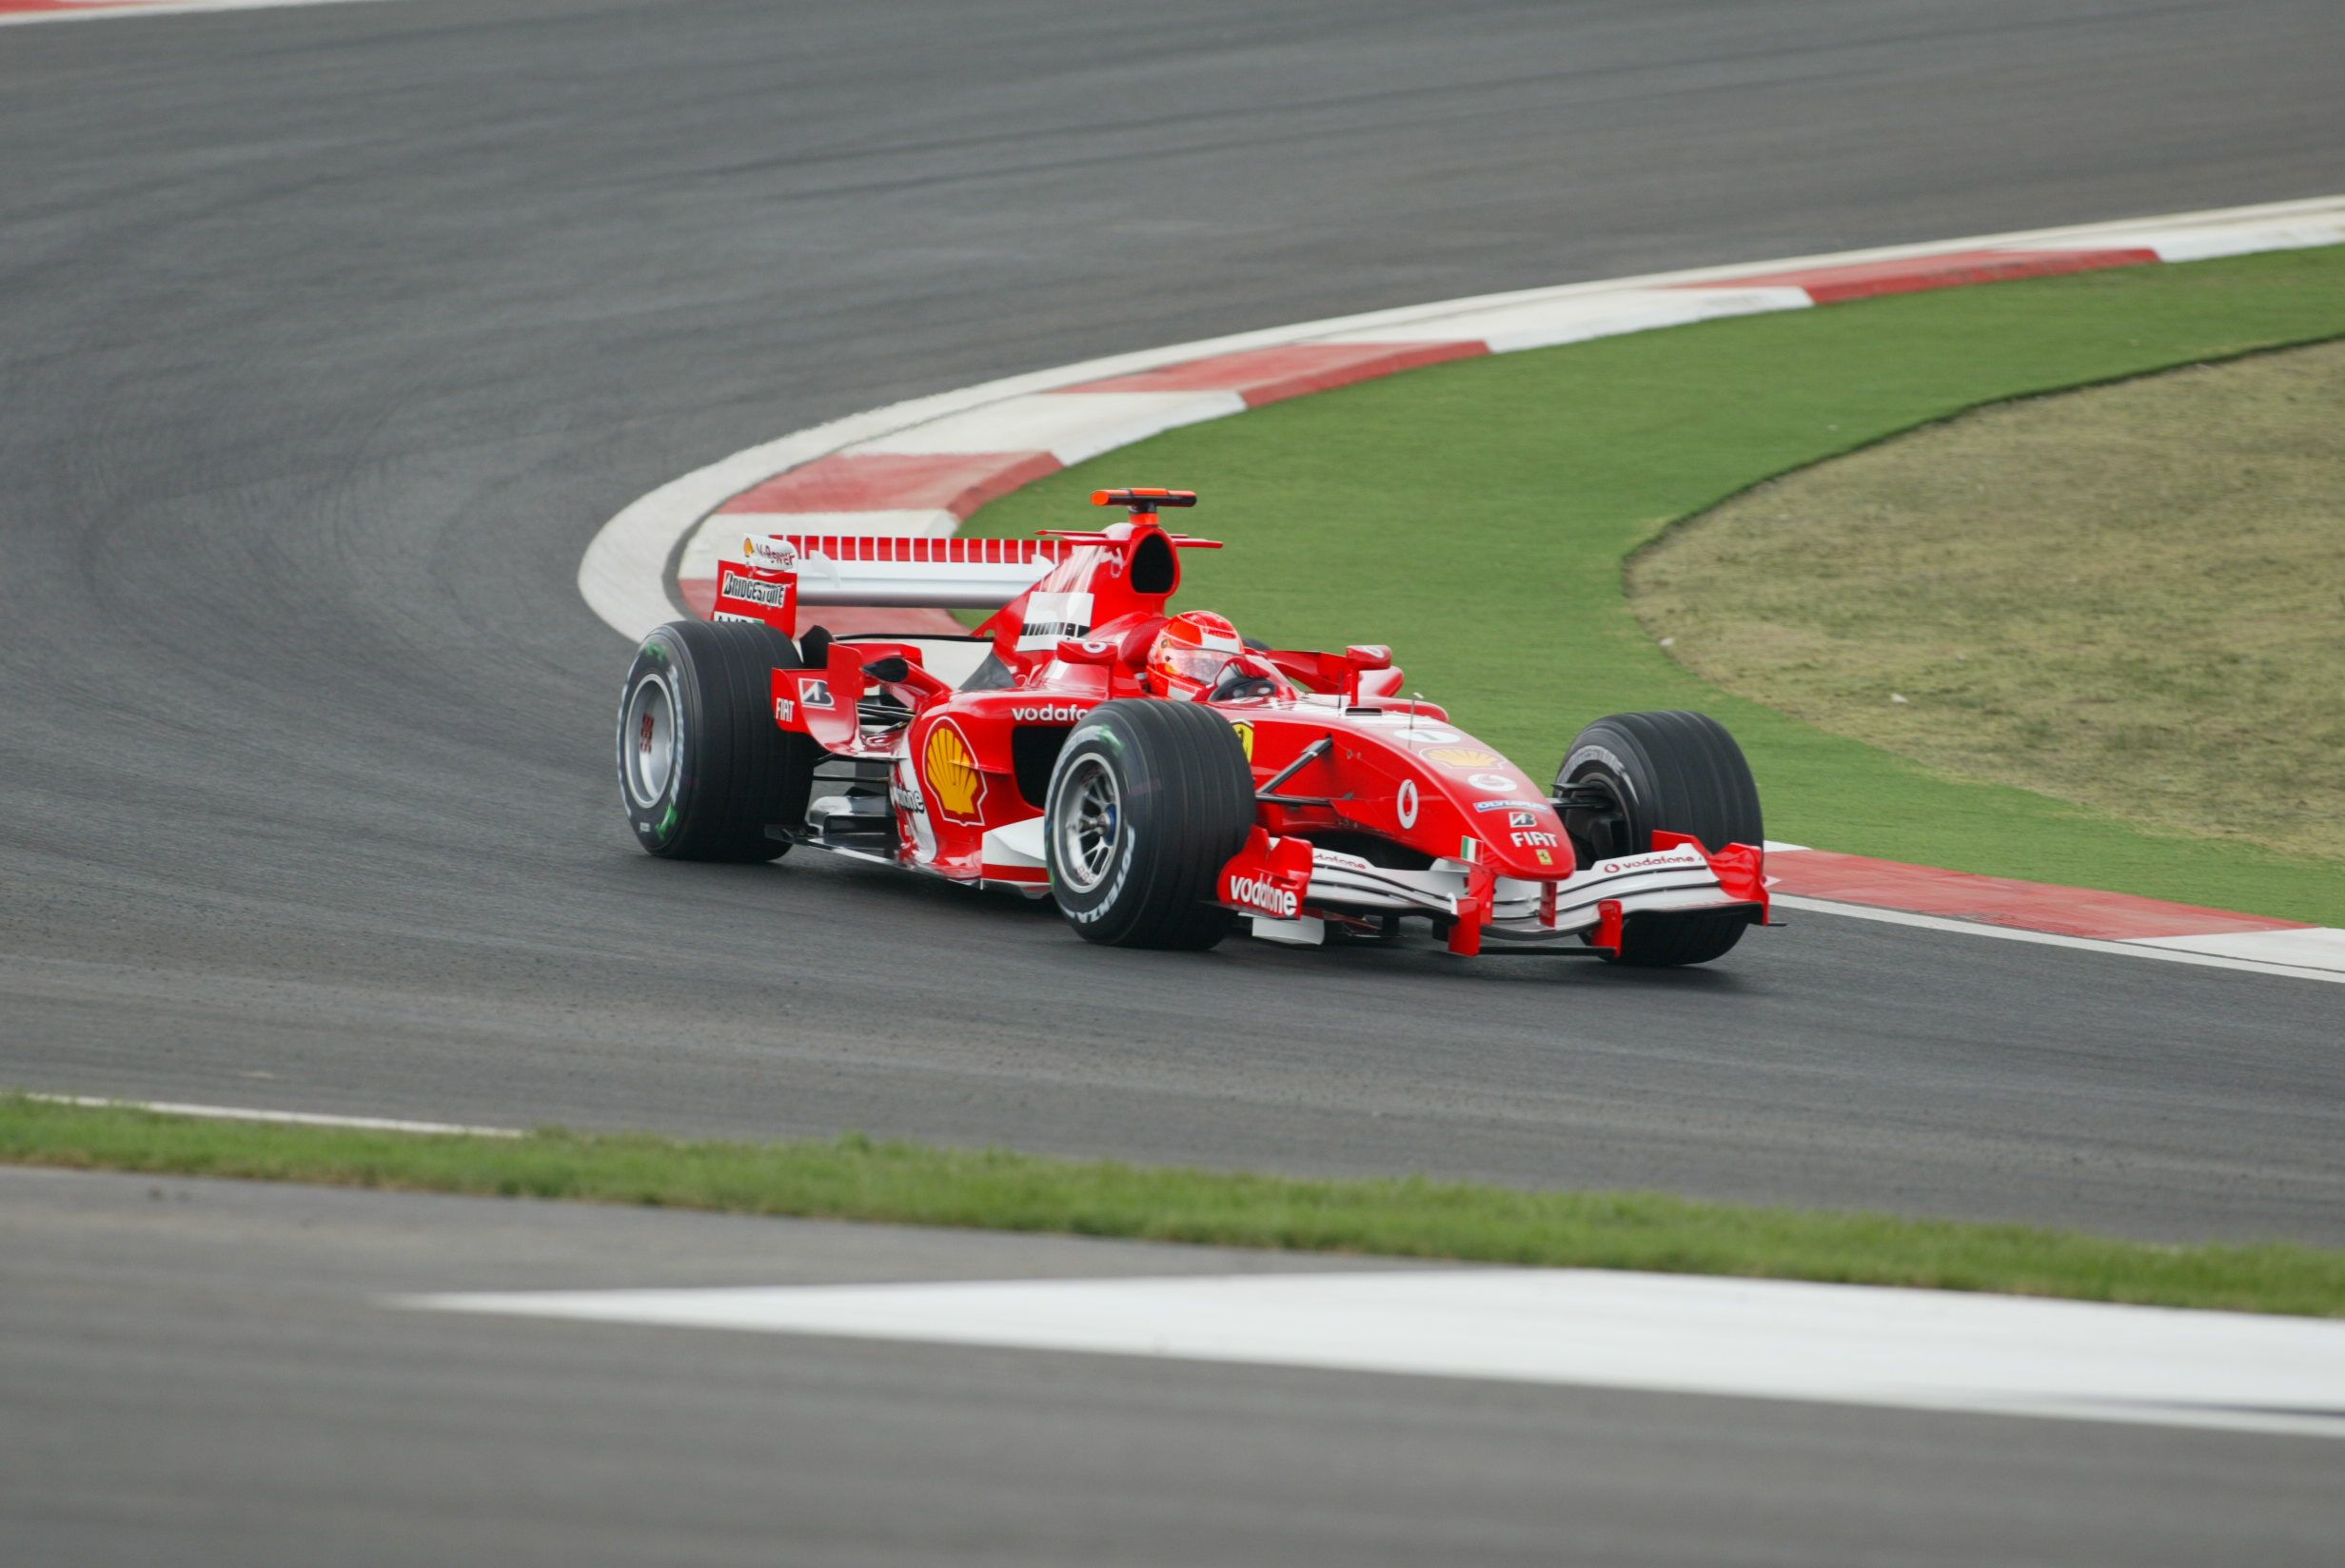 Michael Schumacher drives red race car.